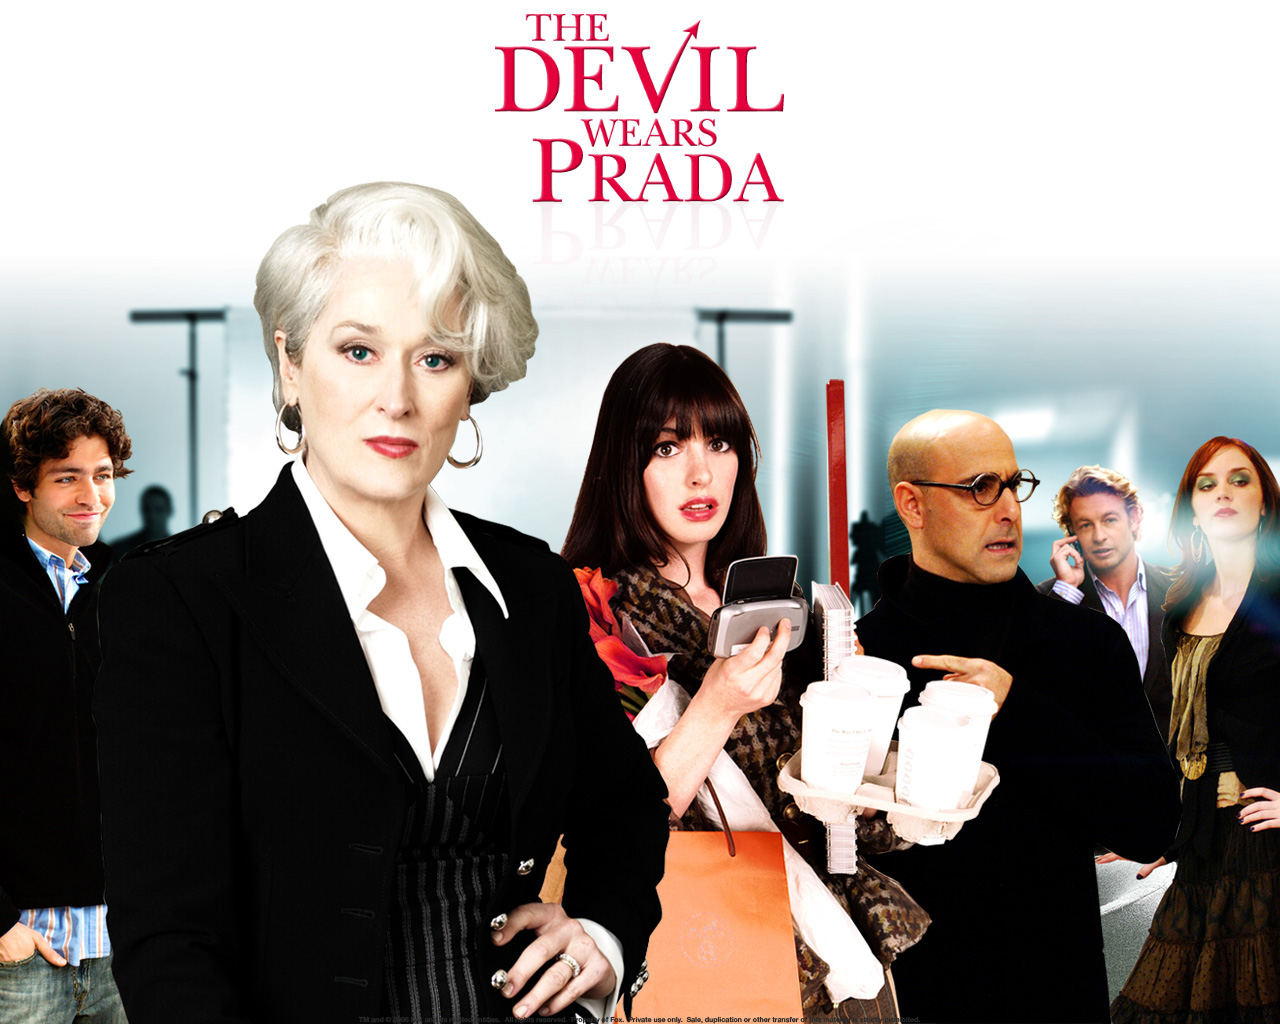 http://1.bp.blogspot.com/-ySCUOVs3te0/TpNy0UQcXJI/AAAAAAAABC4/Jjvg-F8oigM/s1600/The+Devil+Wears+Prada+2006+-+Anne+Hathaway+Meryl+Streep.jpg